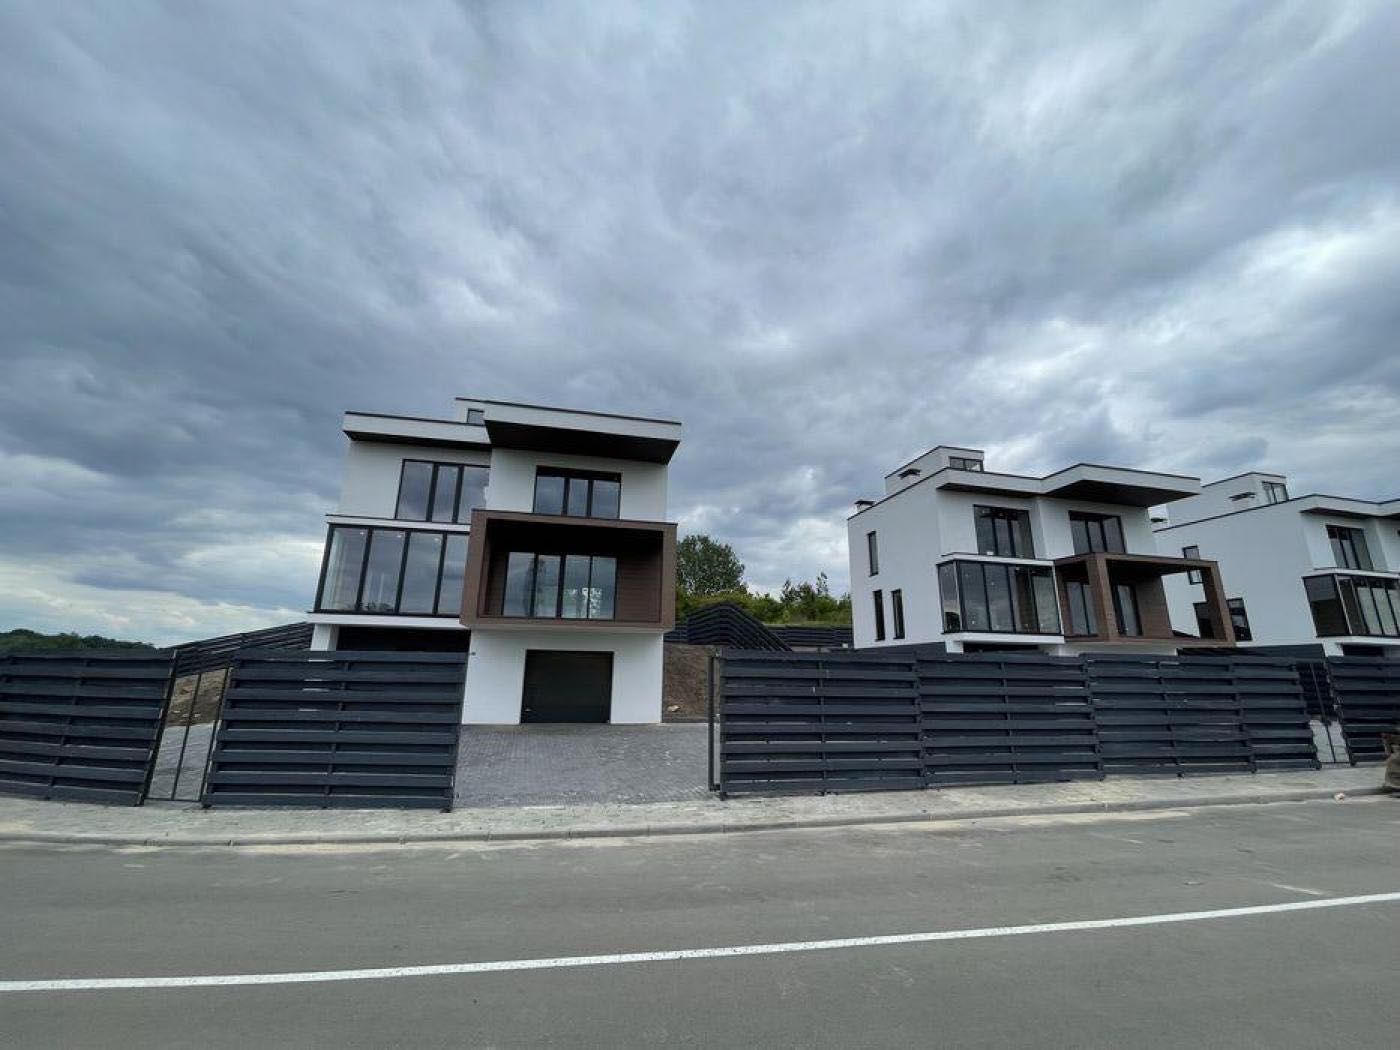 Продається сучасний будинок (250м2) в Лісники / Козин  7,5 соток